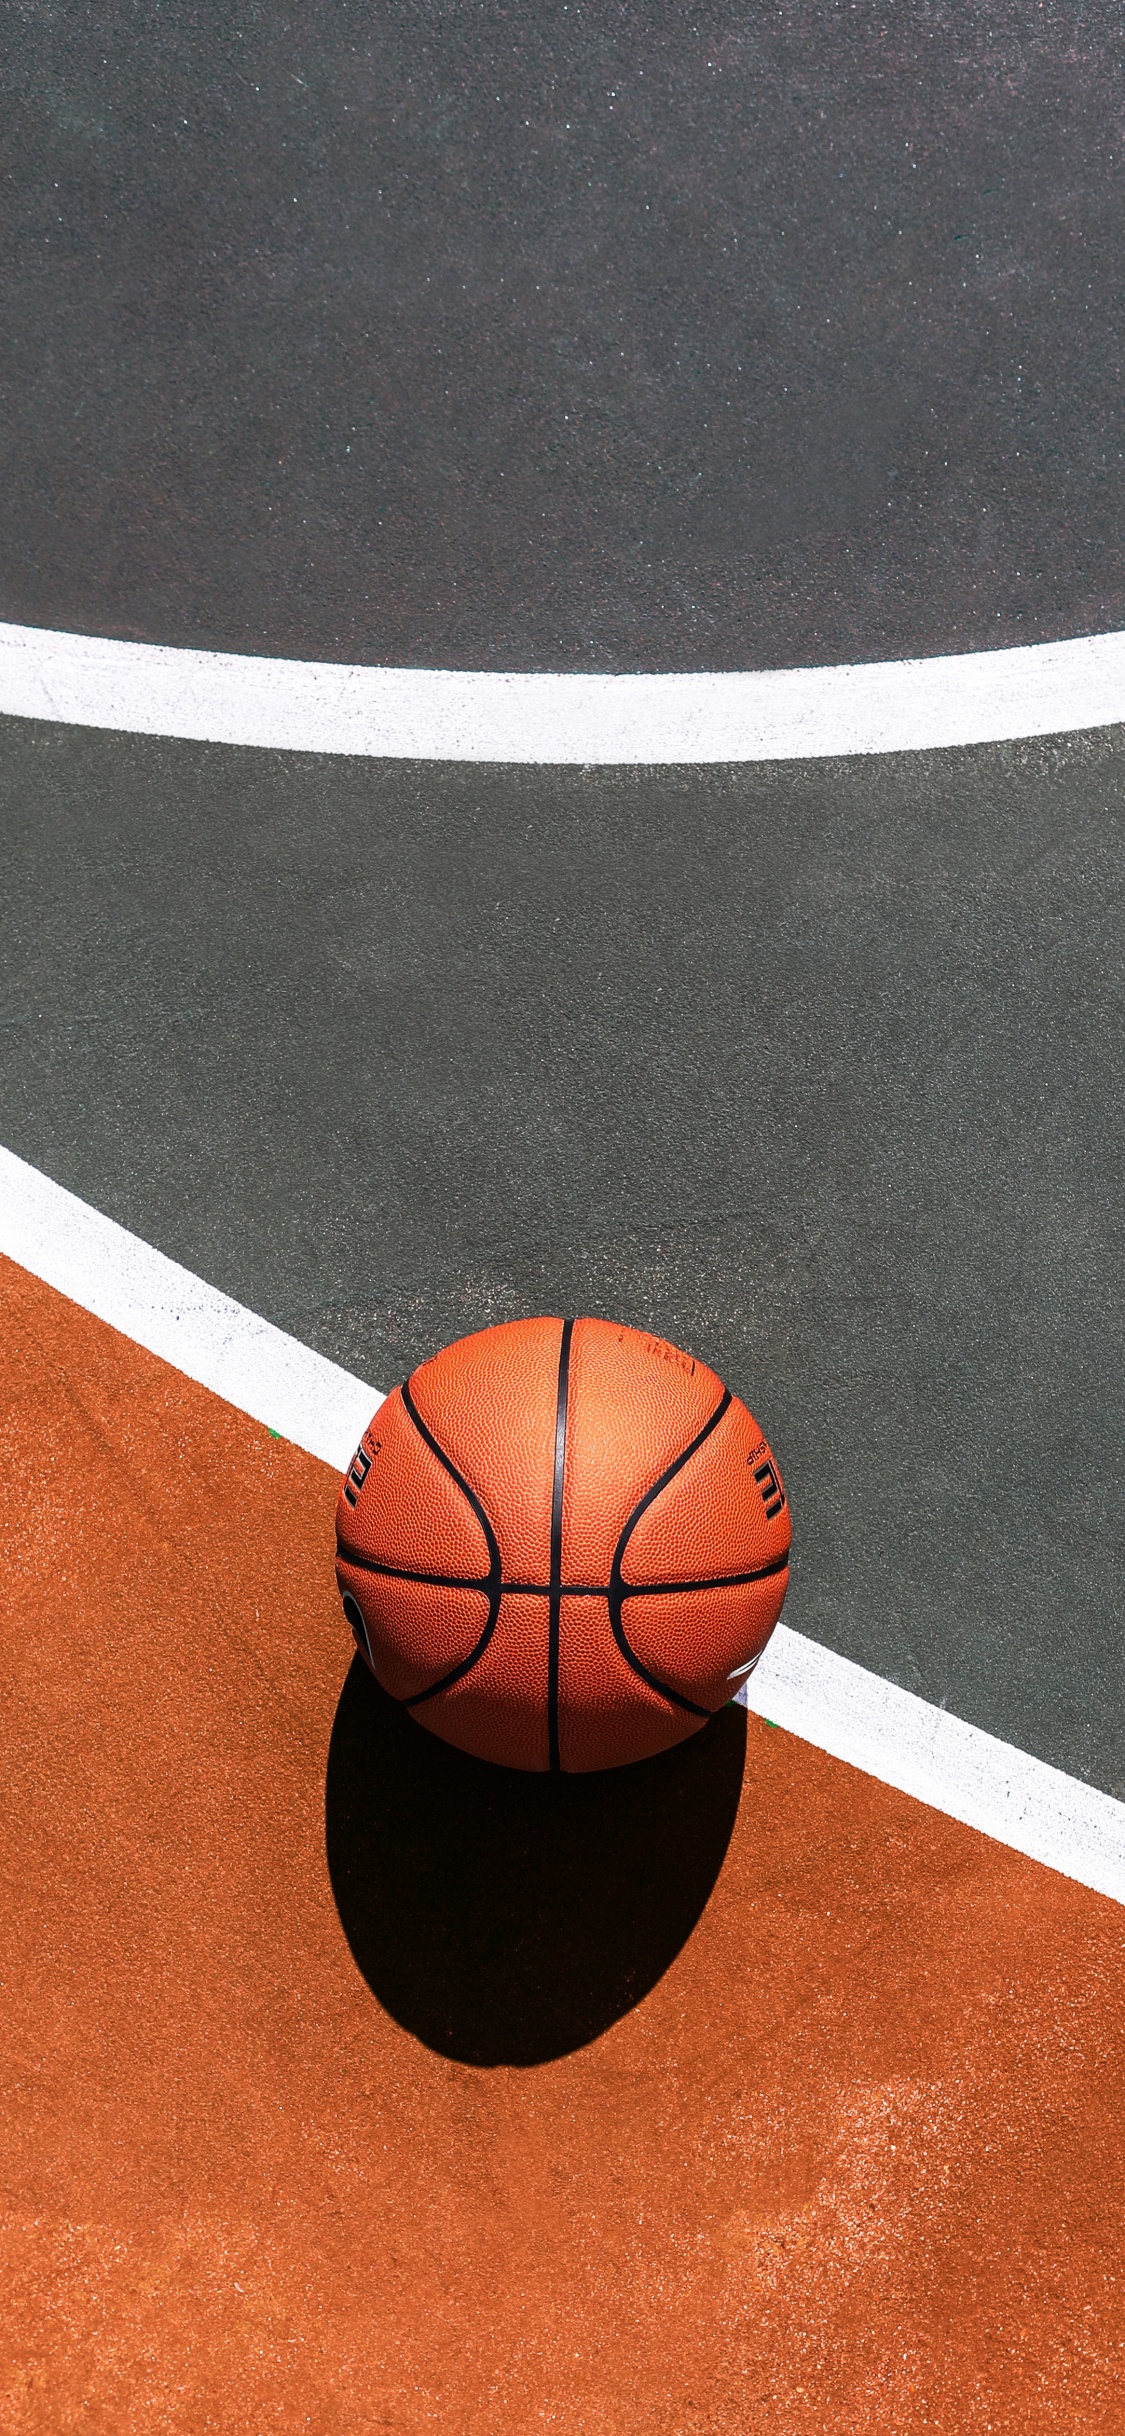 篮球, 篮球场, 运动场地, 球, 团队运动 壁纸 1125x2436 允许